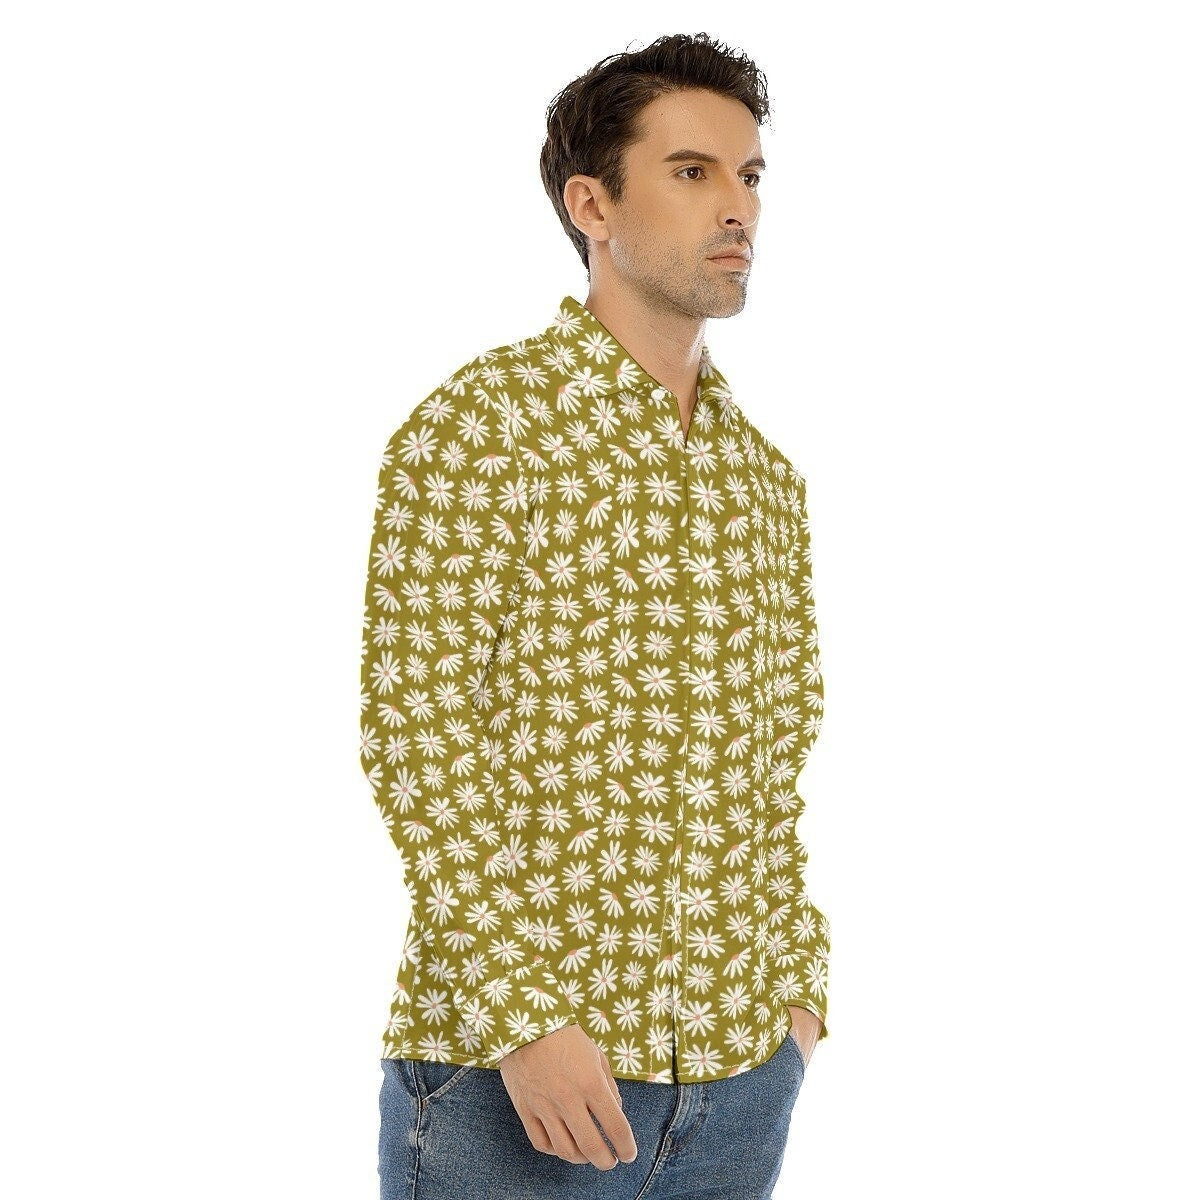 chemise de style vintage des années 70, chemise florale verte pour hommes, vêtements pour hommes des années 70, chemise rétro pour hommes, chemise hippie pour hommes, chemise pour hommes des années 70, chemise inspirée des années 70